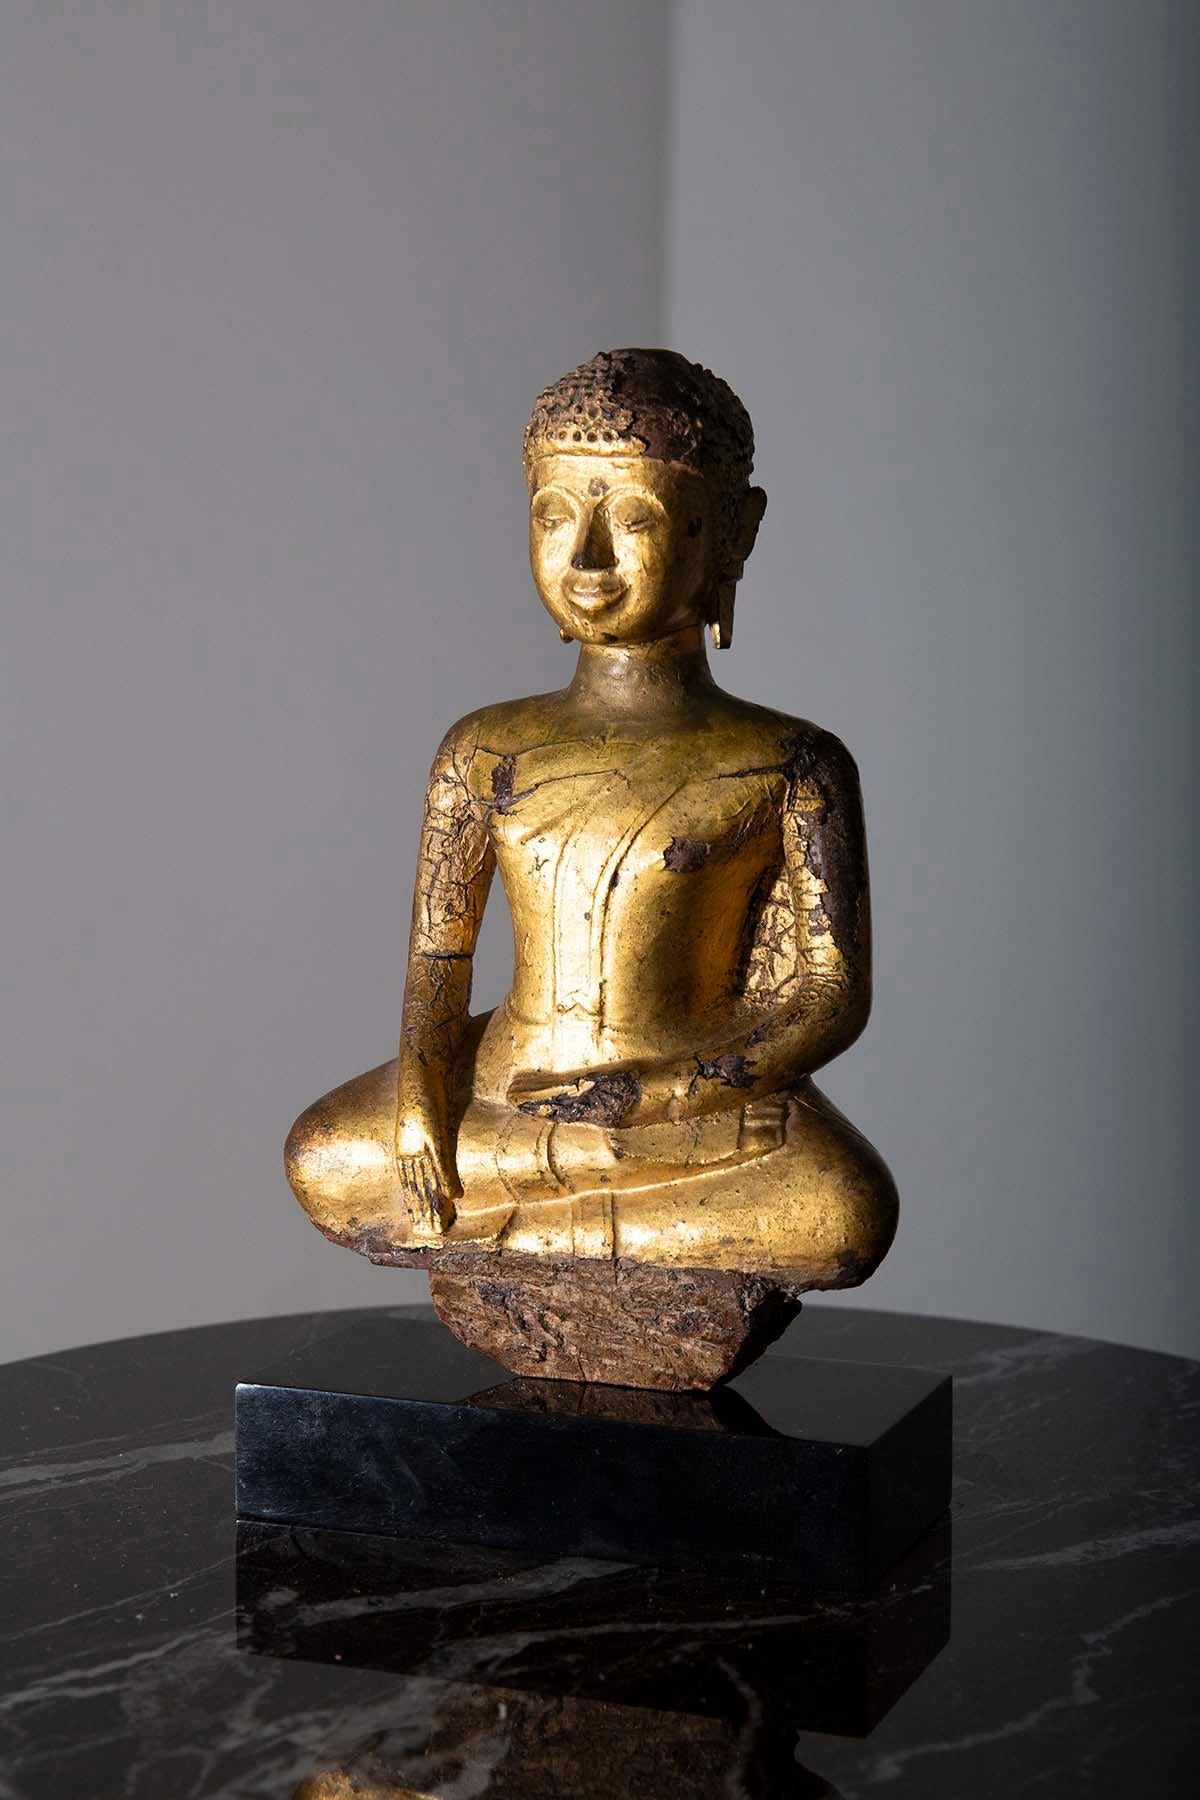 Au cœur d'un sanctuaire paisible, se trouve un chef-d'œuvre sublime, une statue du Bouddha Shakyamuni, une figure qui rayonne de sérénité et d'illumination. En s'approchant de cette divine sculpture, on ne peut qu'être captivé par sa profonde beauté